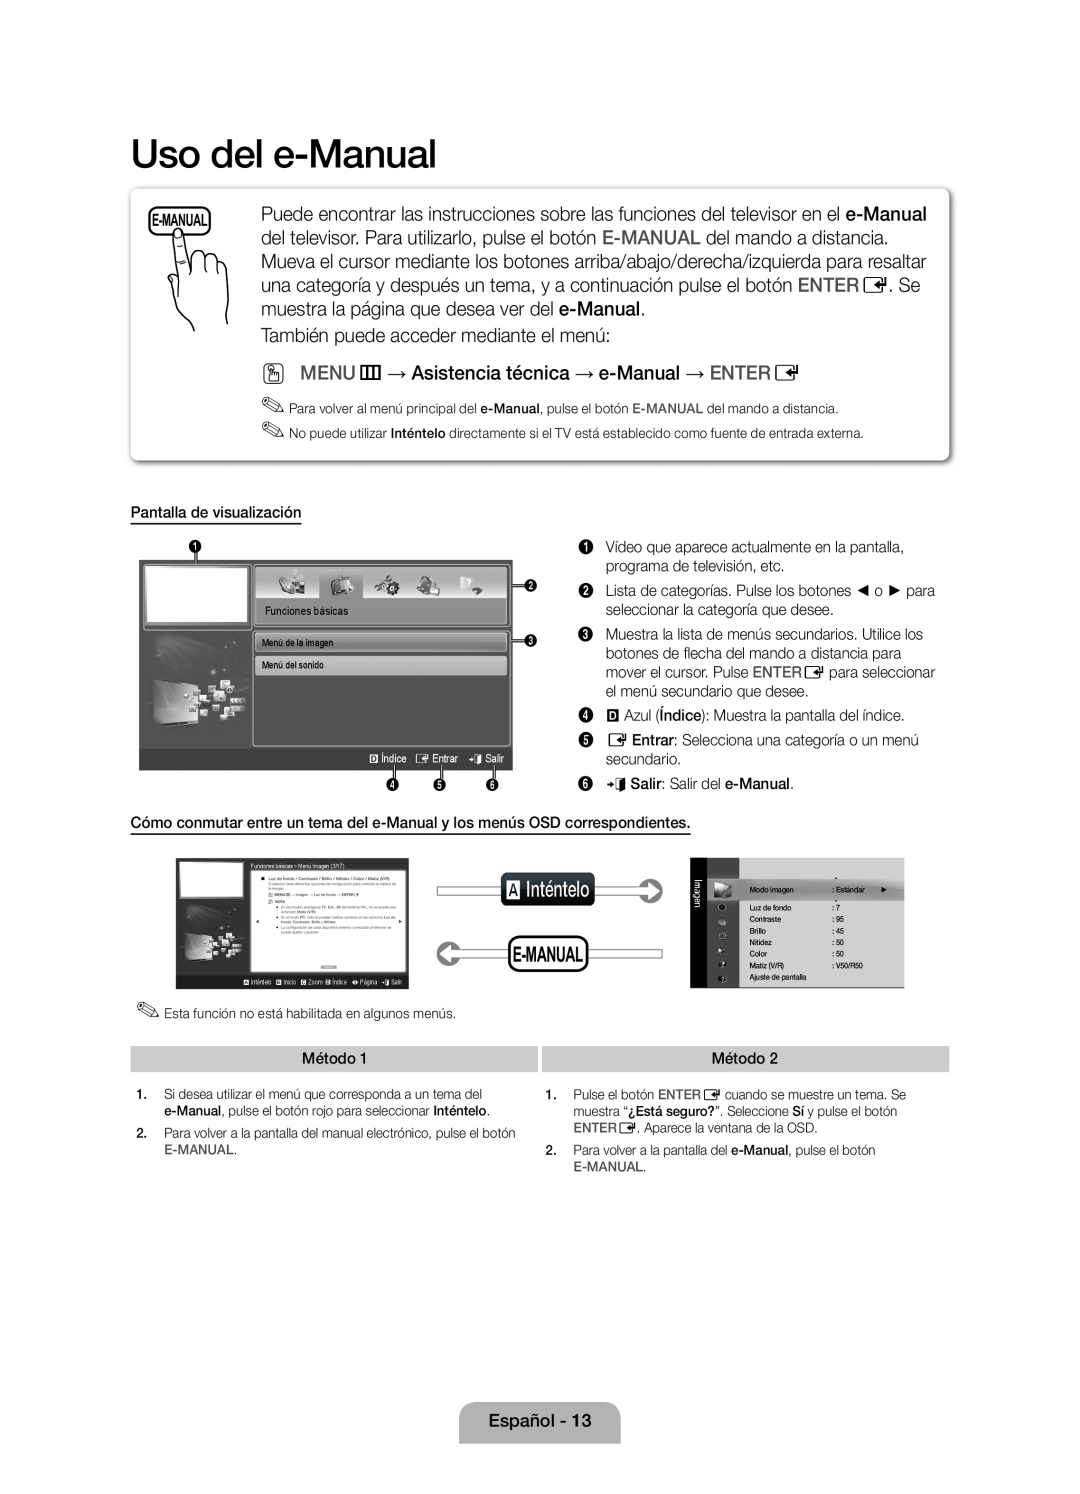 Samsung UE46D5000PWXZG, UE40D5000PWXXH, UE40D5000PWXXC manual Uso del e-Manual, muestra la página que desea ver del e-Manual 